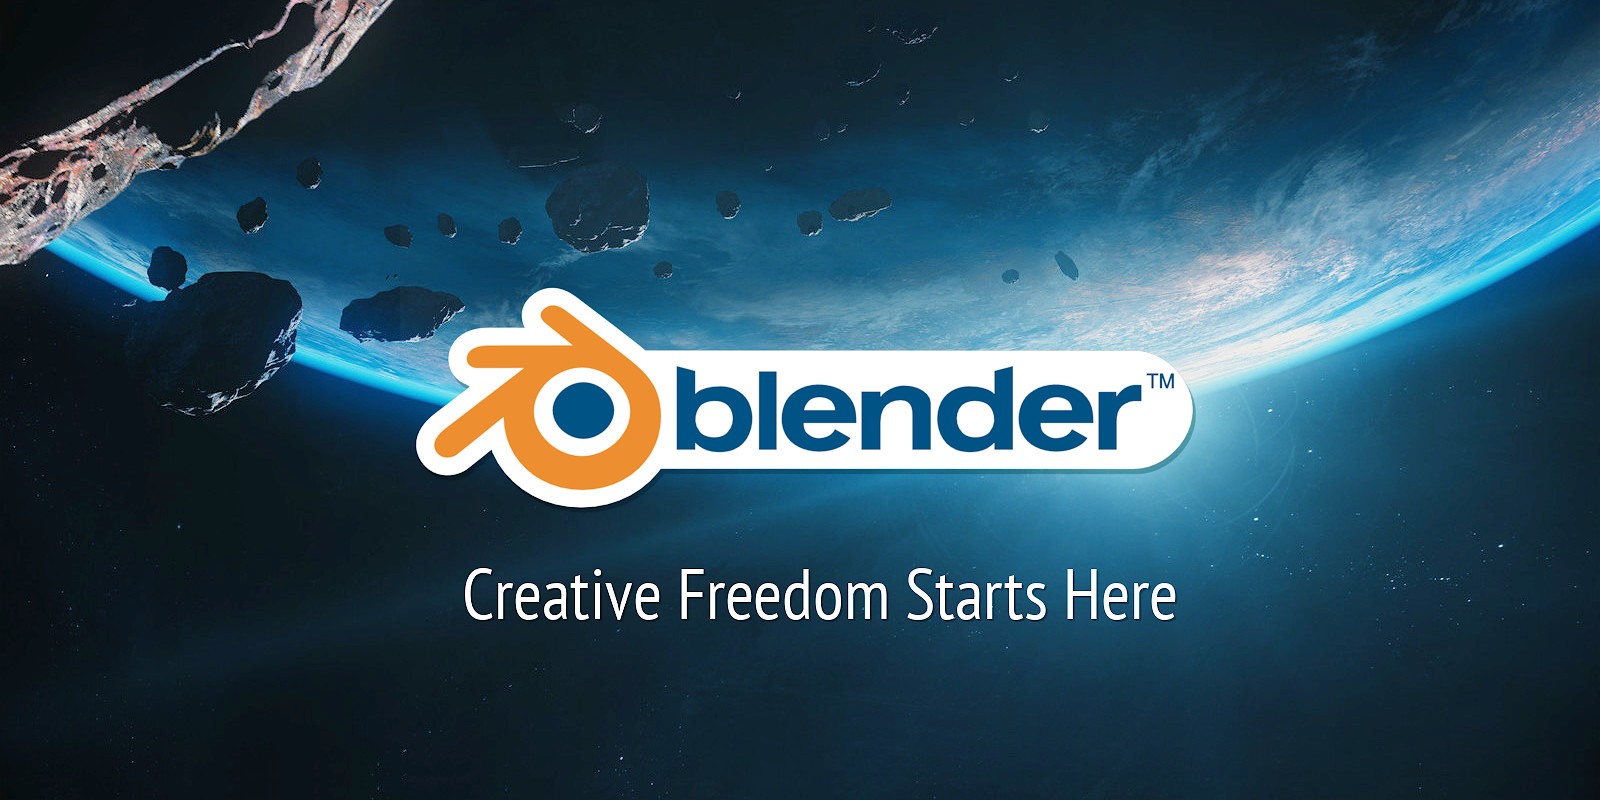 Website — blender.org